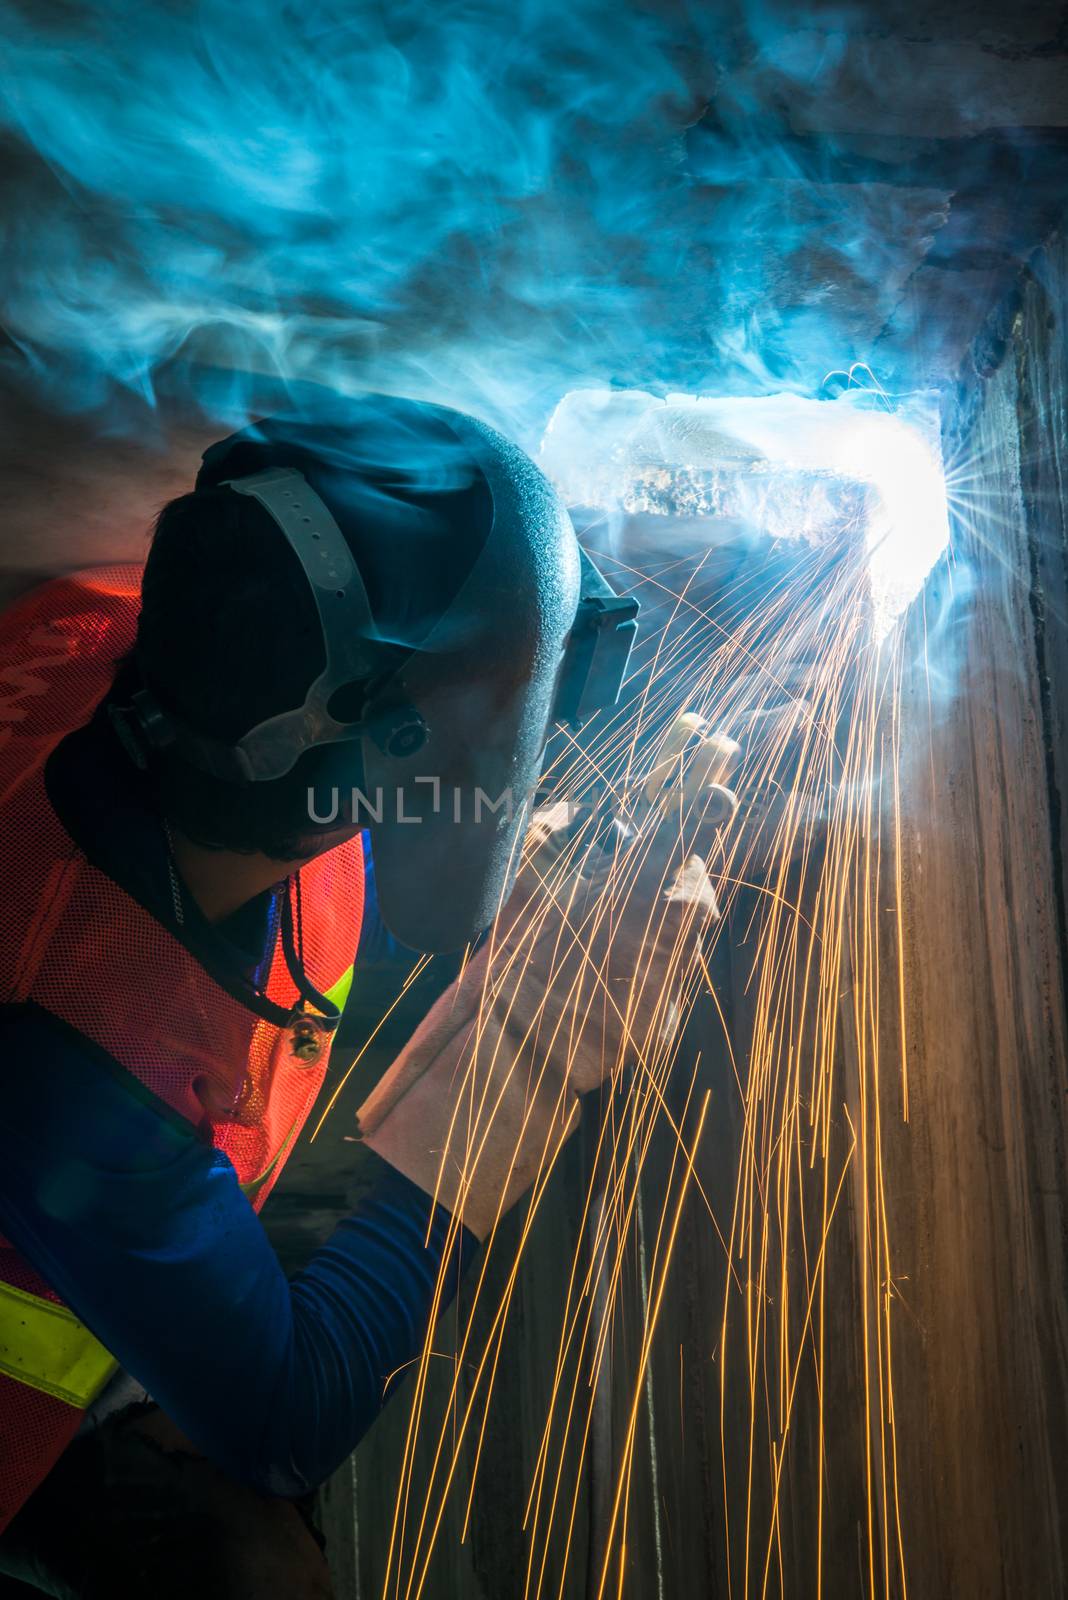 worker welding by antpkr